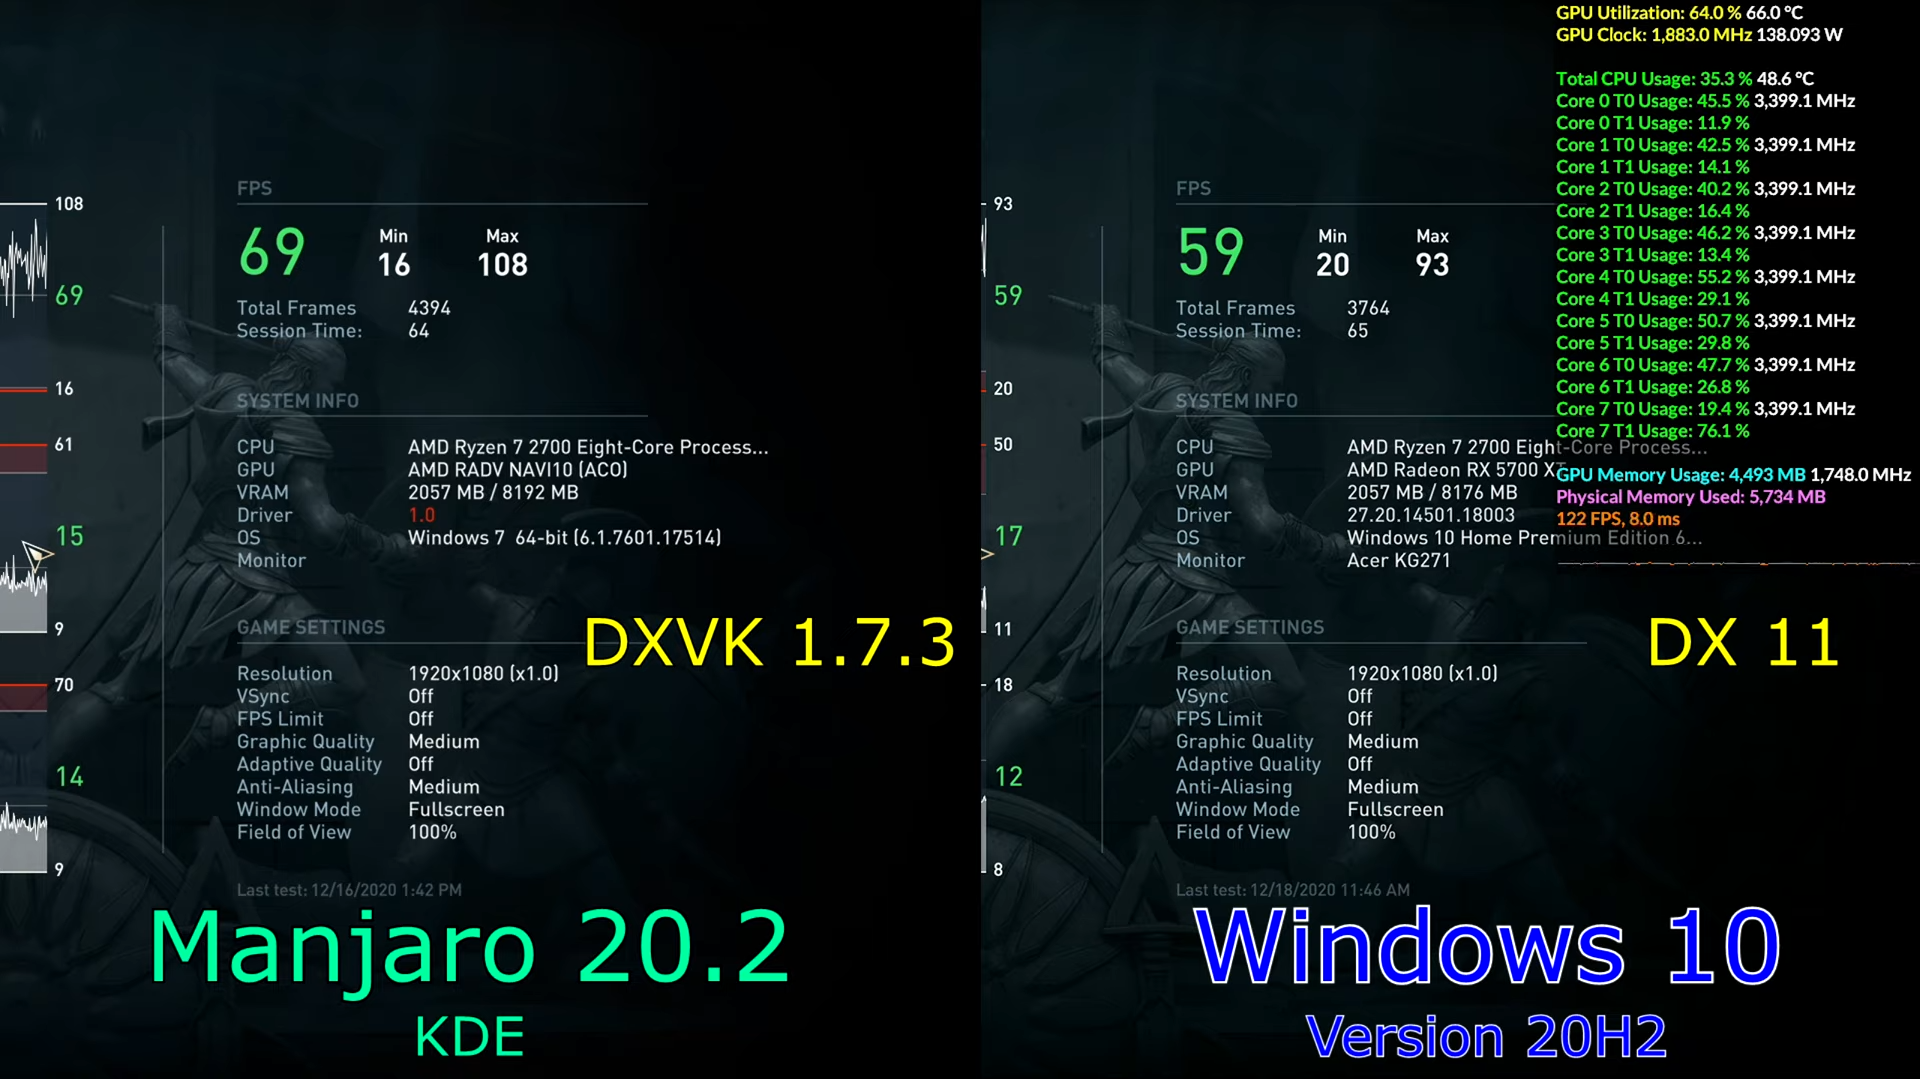 DXVK 1.7.3 Majaro 20.2 vs DX11 Windows 10 20H2.png